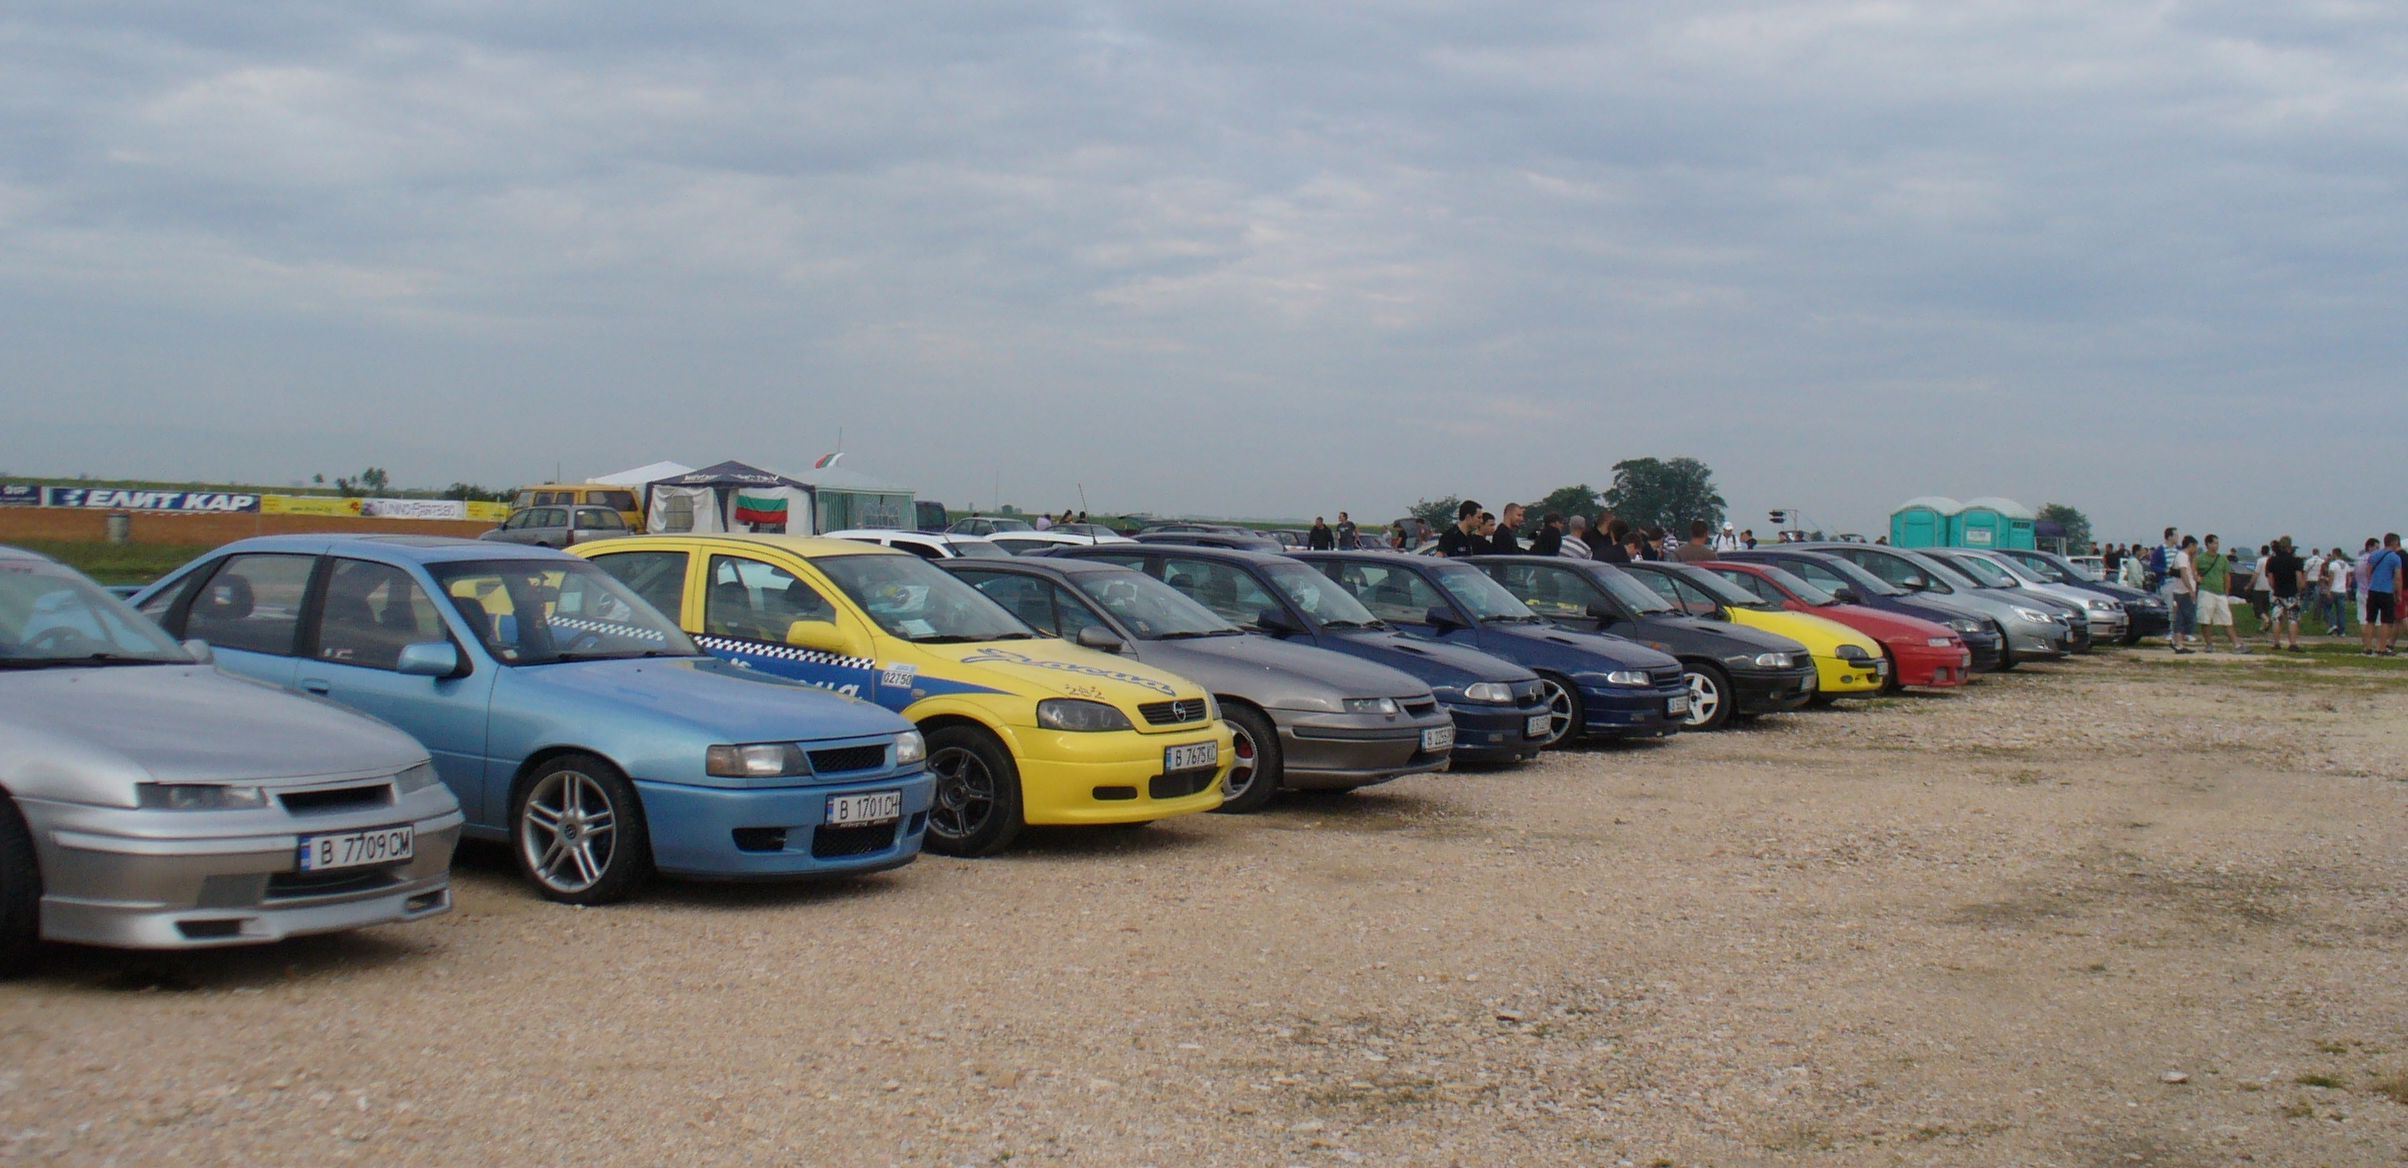 Шести национален събор на Opel у нас